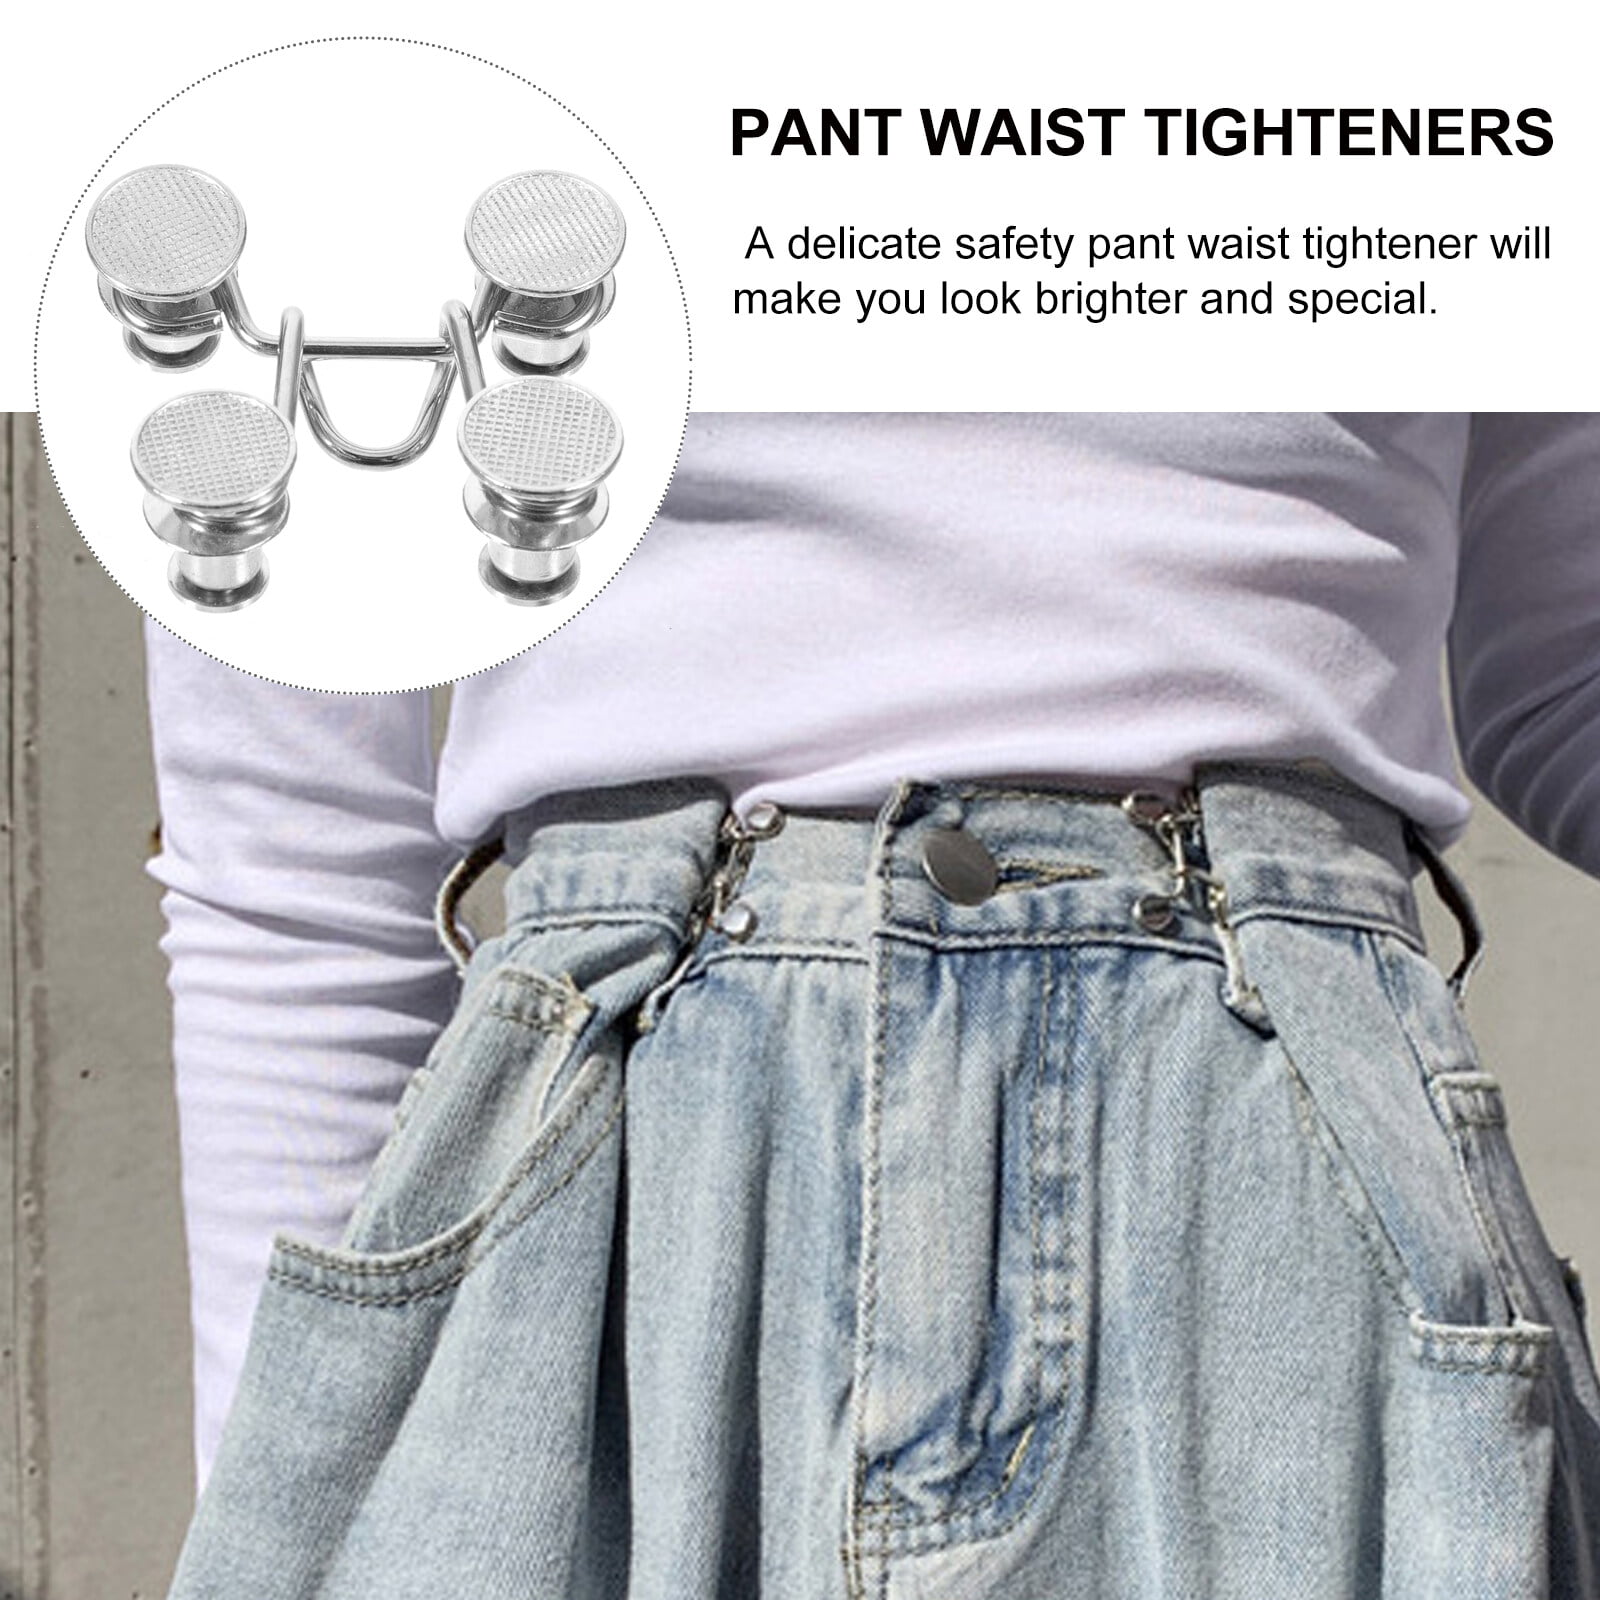  oditton Pant Waist Tightener Set - Adjustable Waist